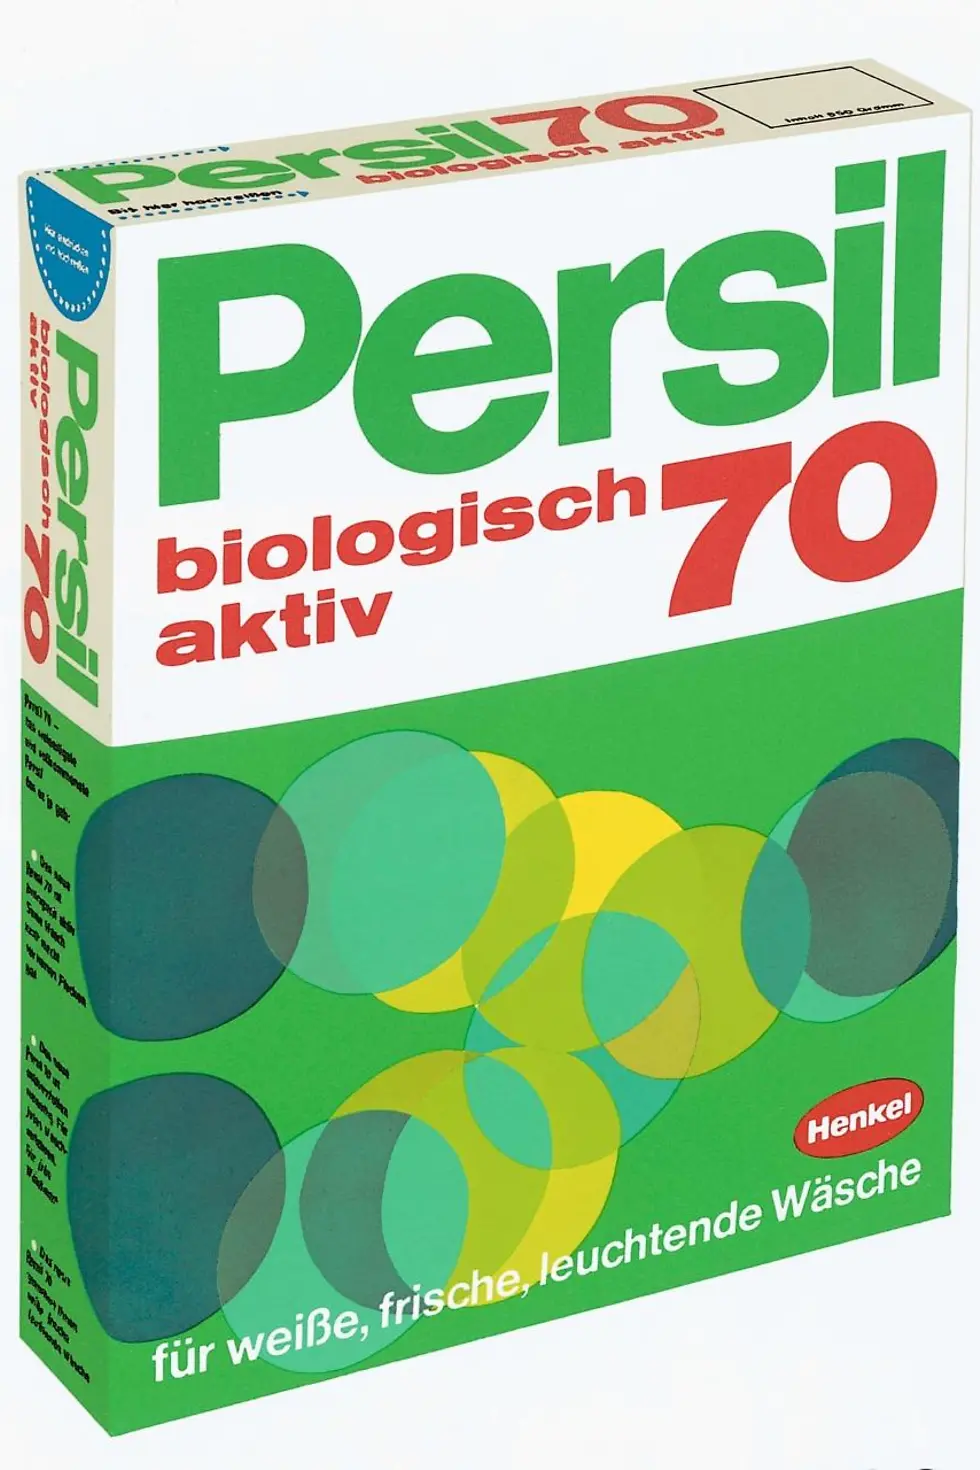 Das Persil „Biologisch Aktiv“ aus dem Jahr 1969 leistete einen wichtigen Beitrag zum Energiesparen beim Waschen